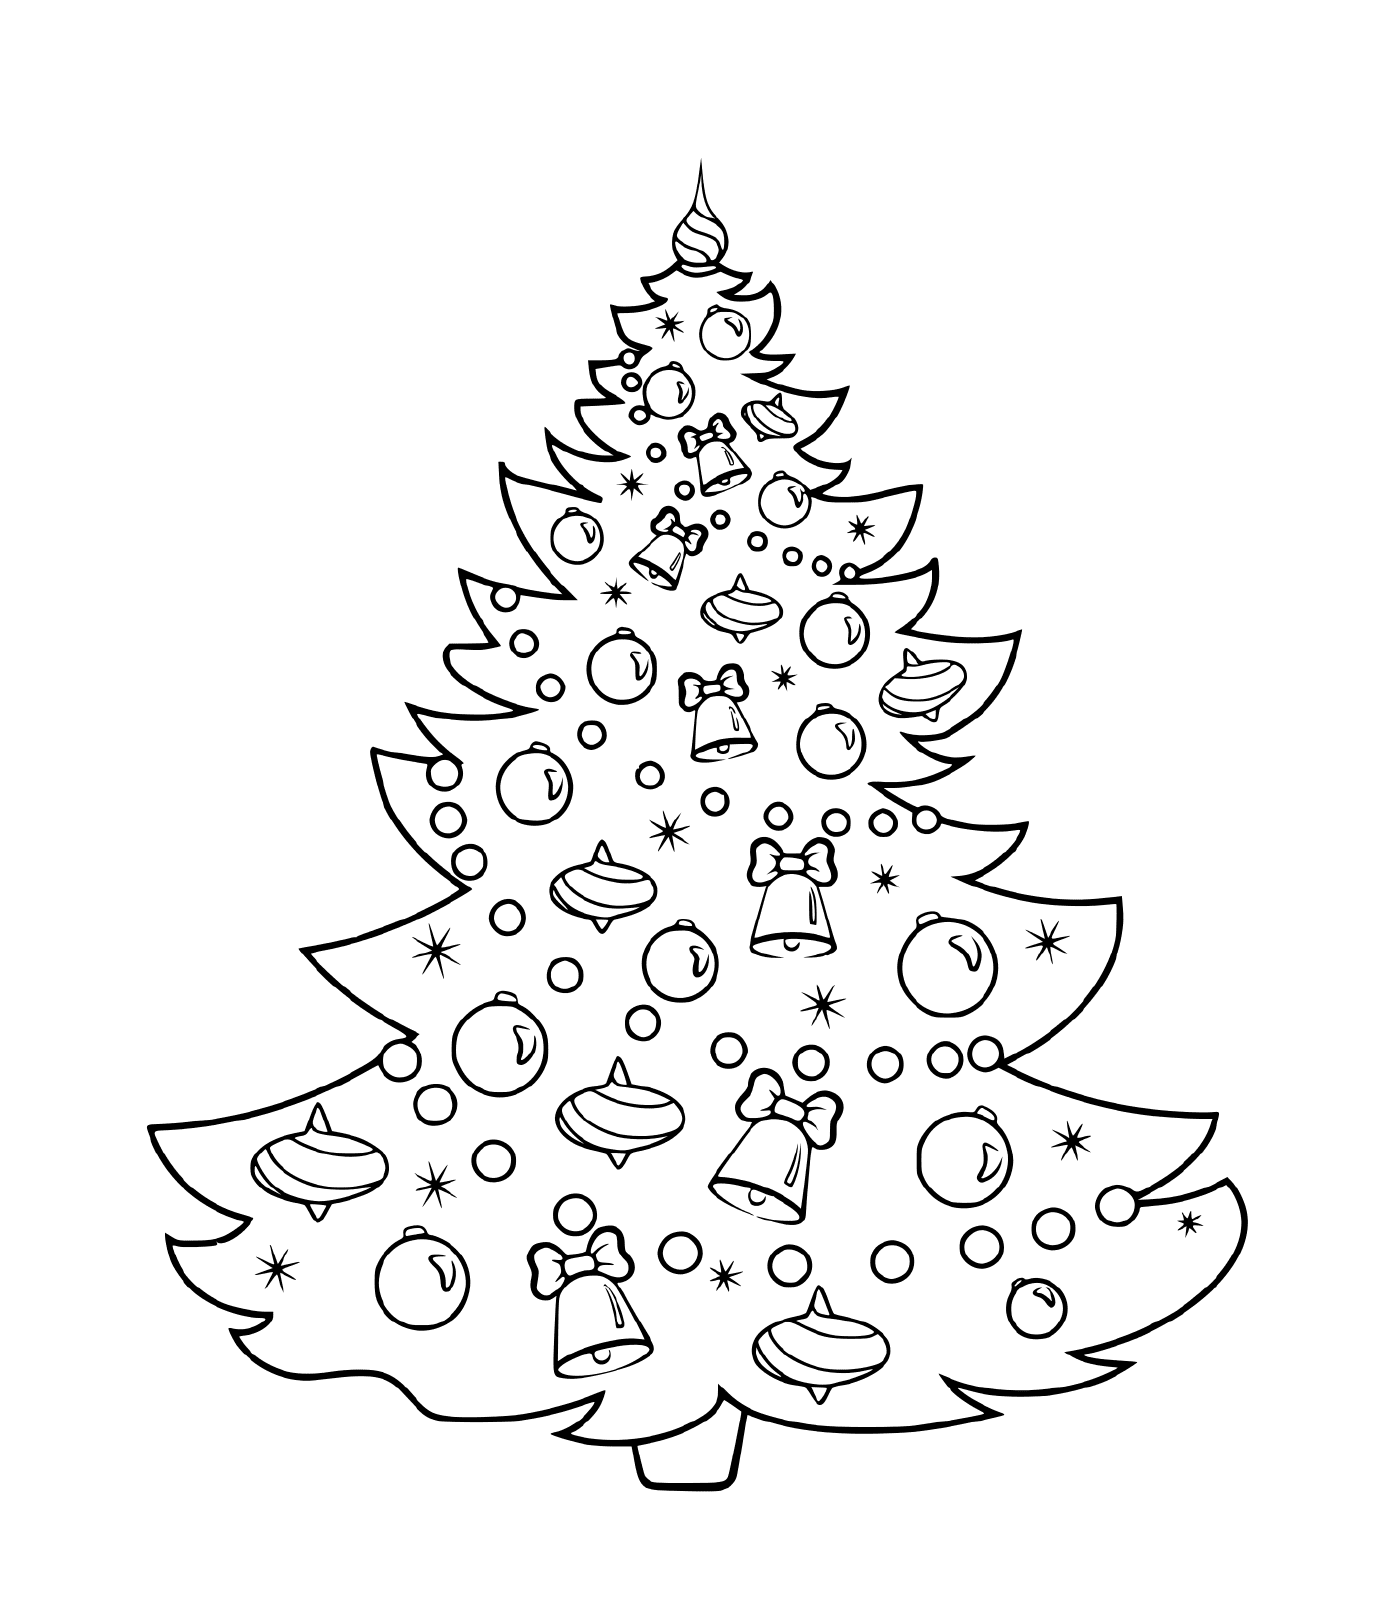  गेंदों, घंटी और कवच के साथ क्रिसमस पेड़ 